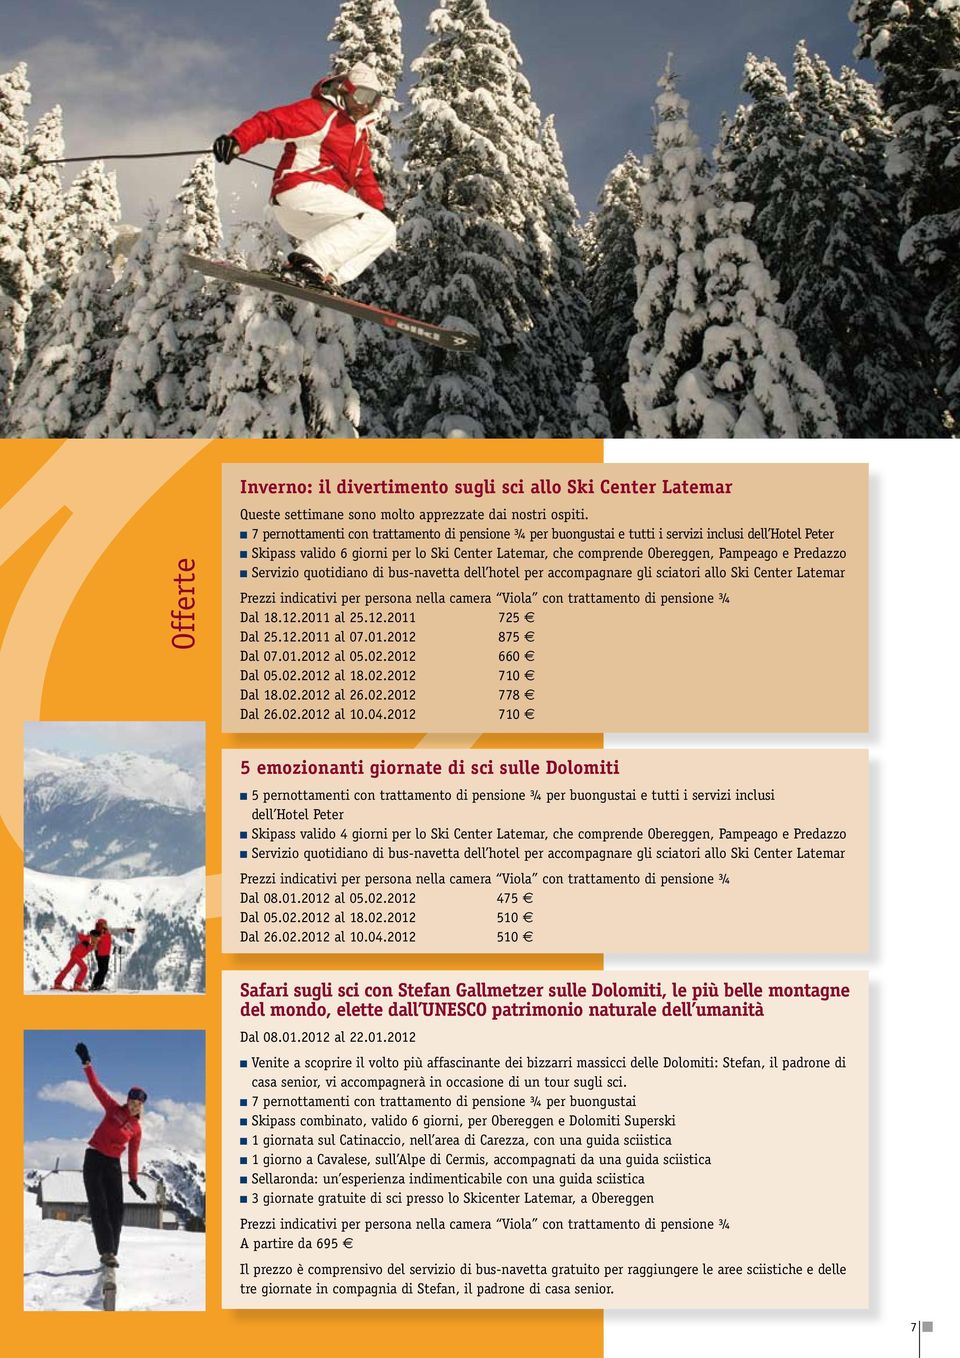 Servizio quotidiano di bus-navetta dell hotel per accompagnare gli sciatori allo Ski Center Latemar Prezzi indicativi per persona nella camera Viola con trattamento di pensione ¾ Dal 18.12.2011 al 25.